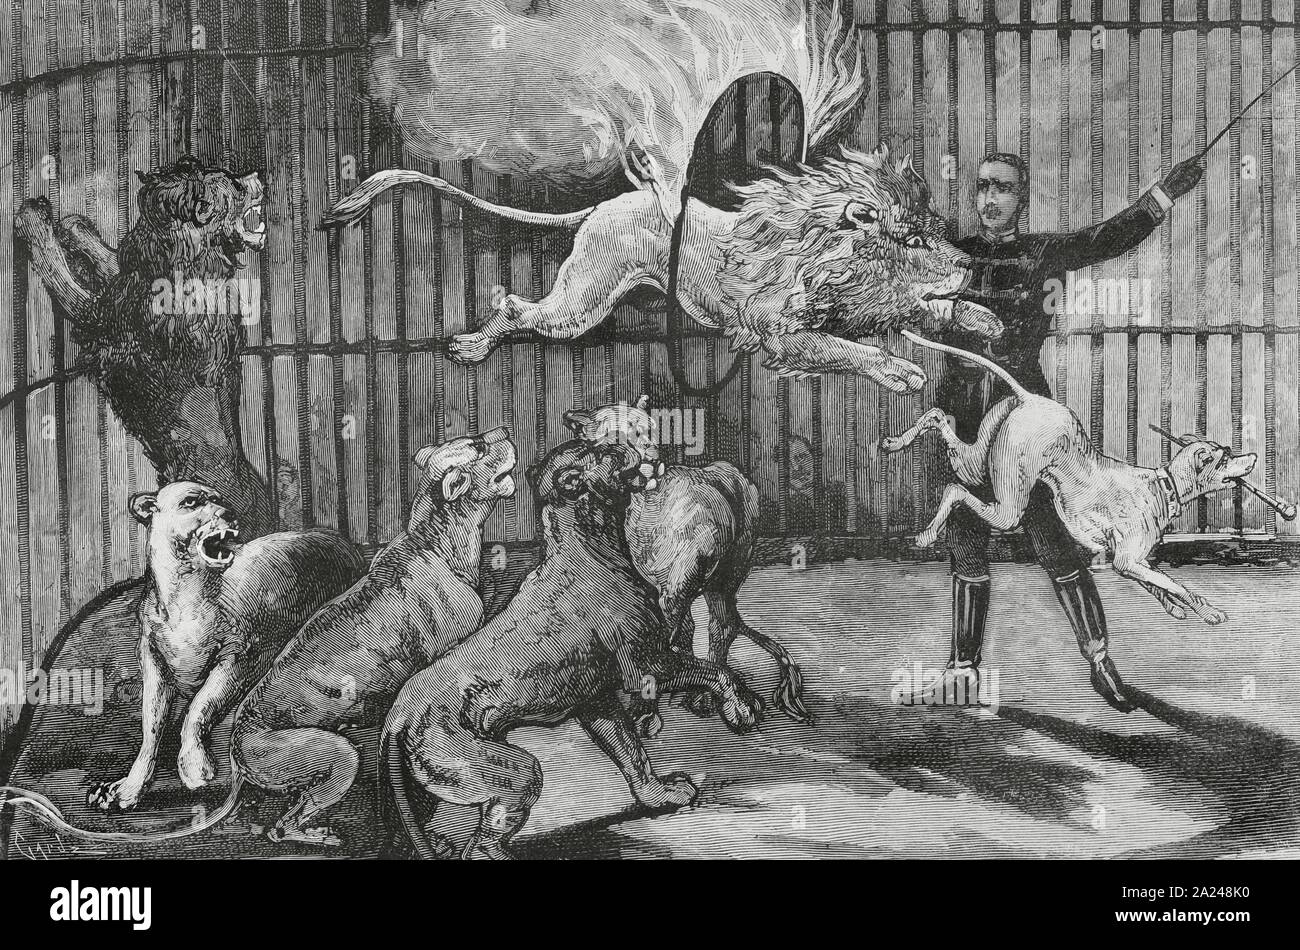 El domador de leones, Mr. Seeth, en el interior de una jaula con fieras y un perro, ejecutando sus arriesgados ejercicios. Grabado por Tomás Carlos Capuz (1834-1899). La Ilustración Española y Americana, 22 de junio de 1884. Stock Photo